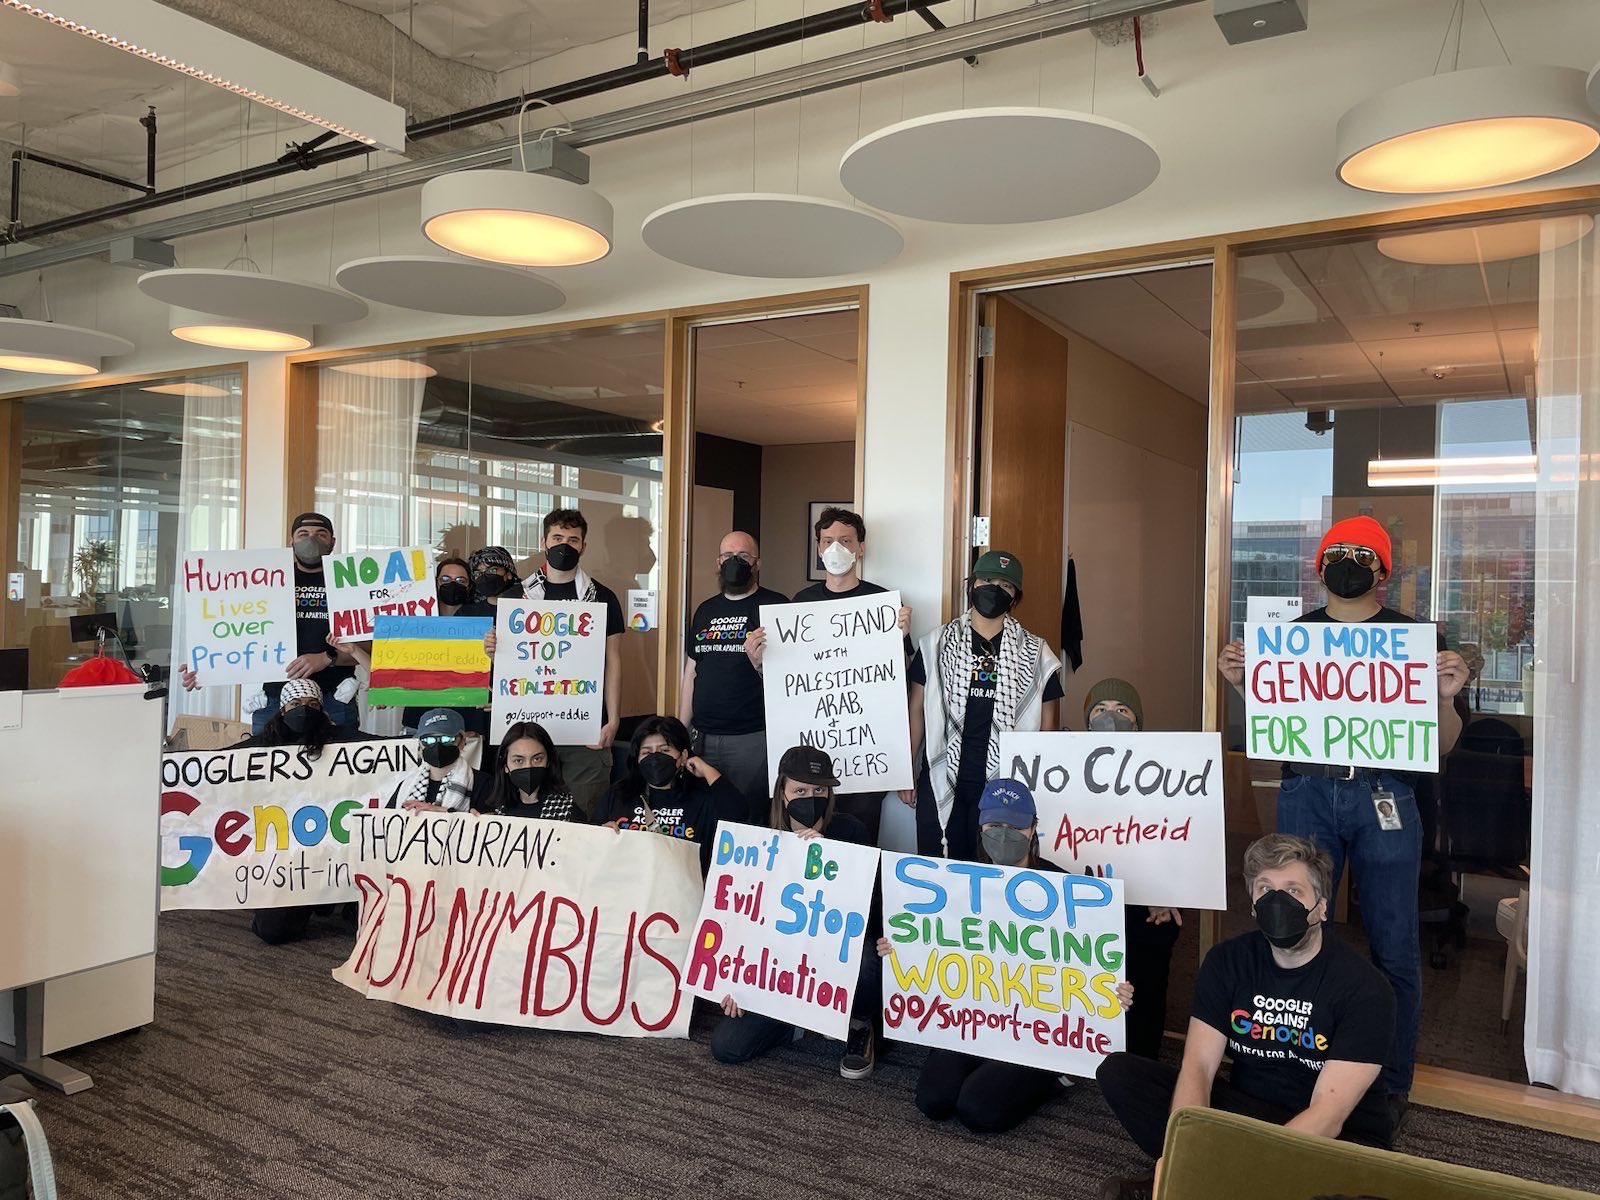 Google despide a 28 de sus trabajadores por protestar a Proyecto Nimbus con Israel y condiciones de trabajo